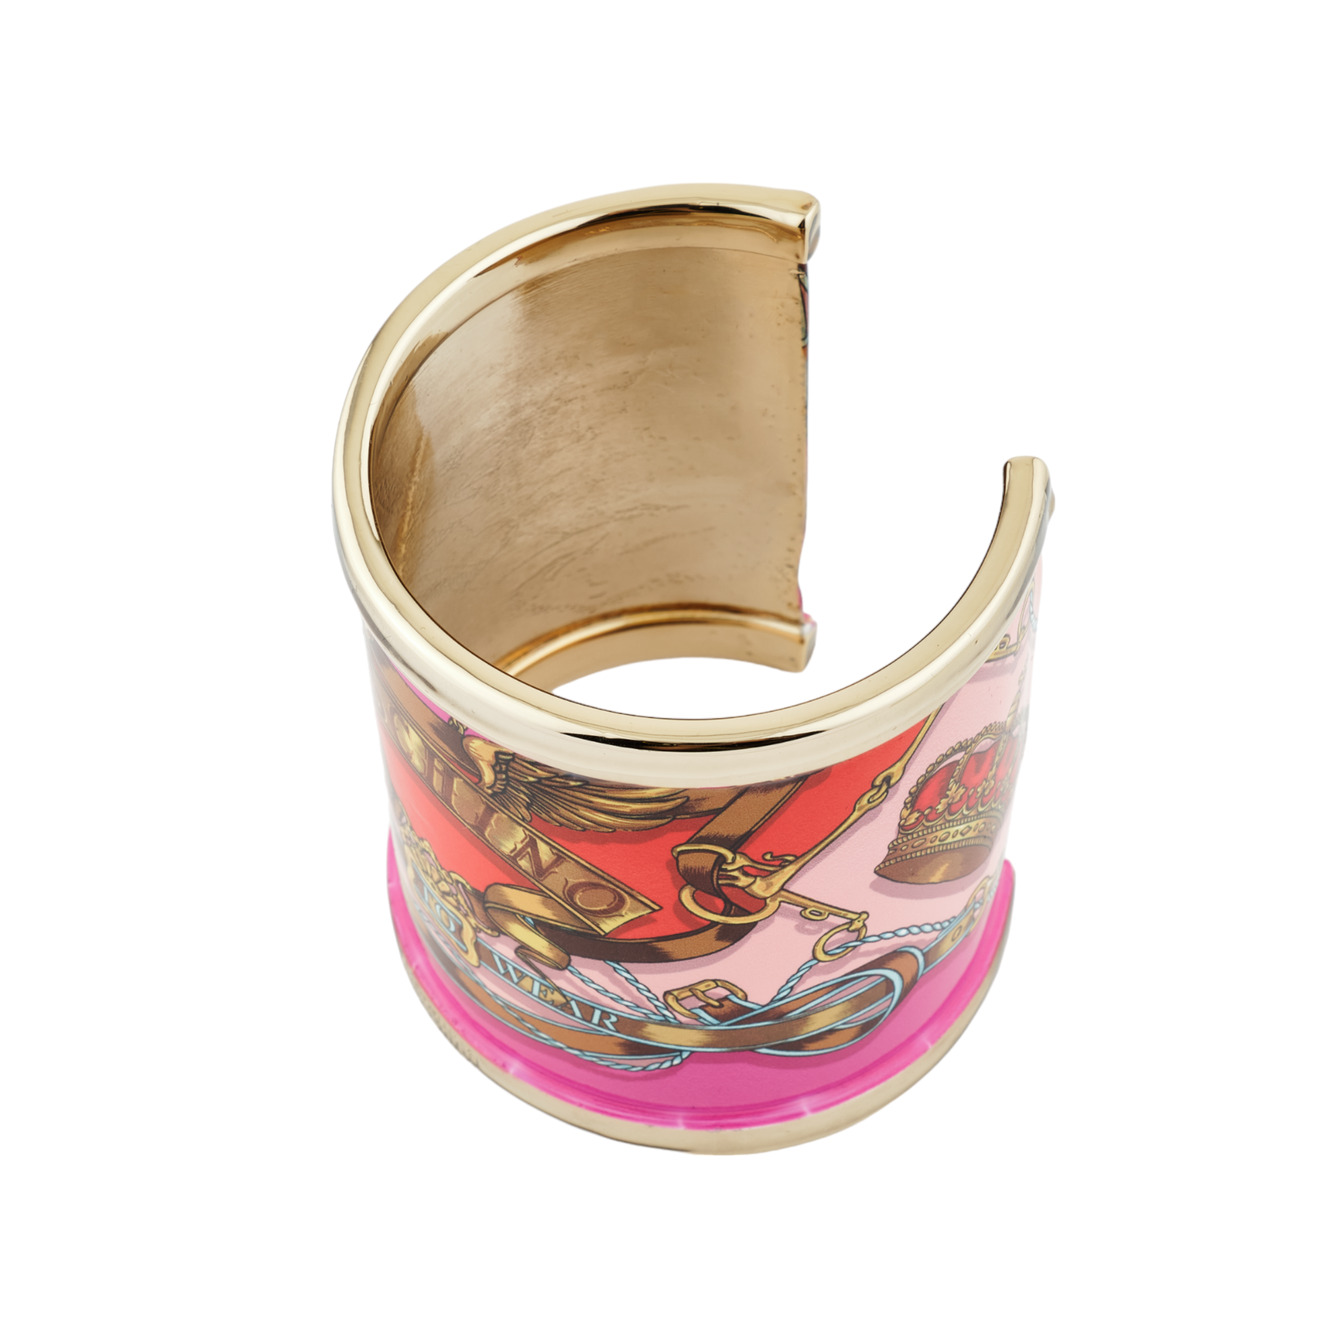 Moschino Широкий открытый браслет с красно-розовой эмалью